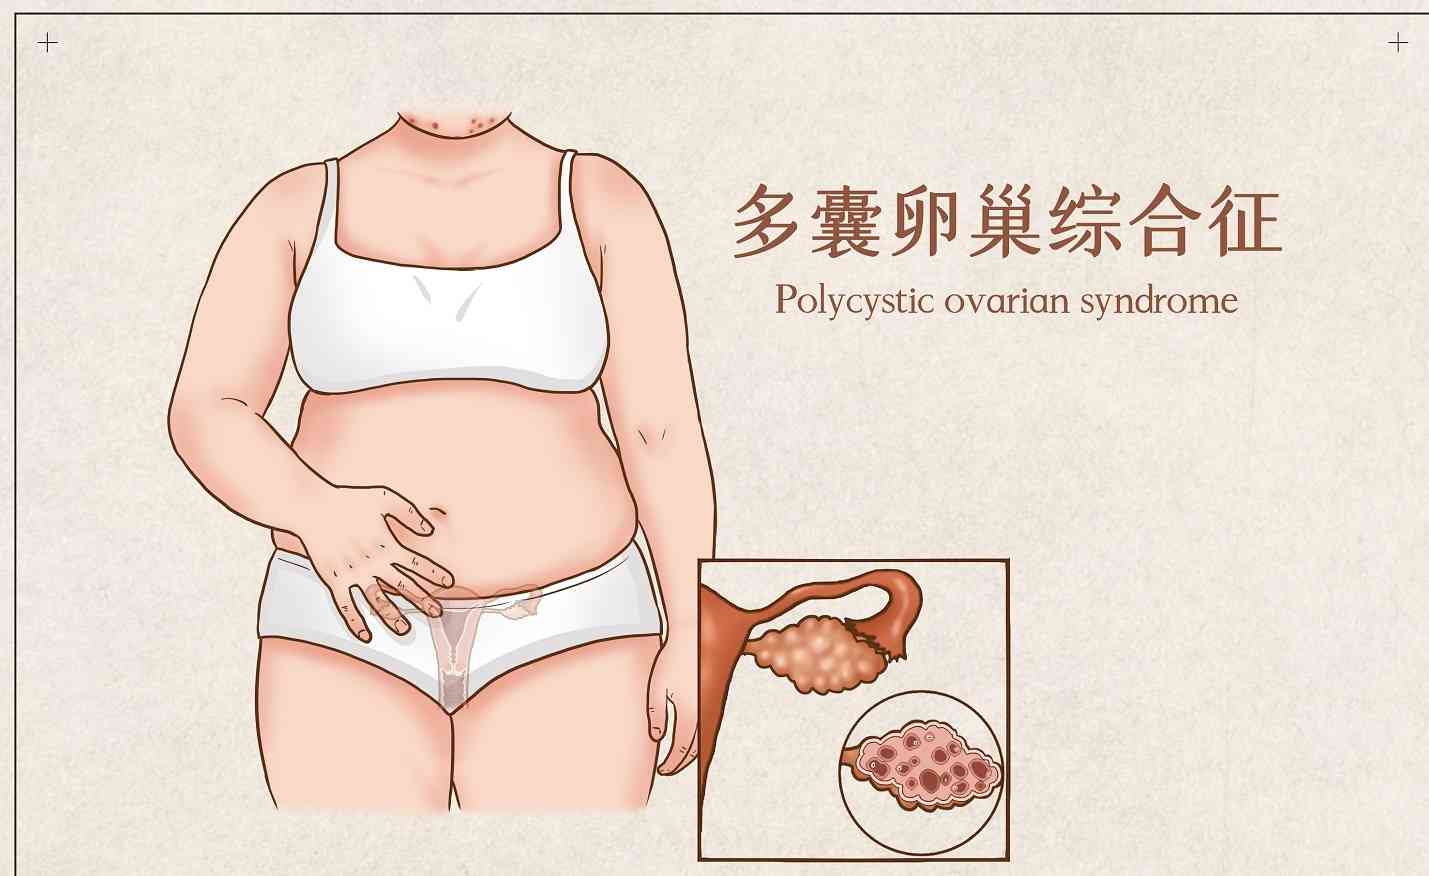 多囊卵巢综合征可能导致不排卵不孕